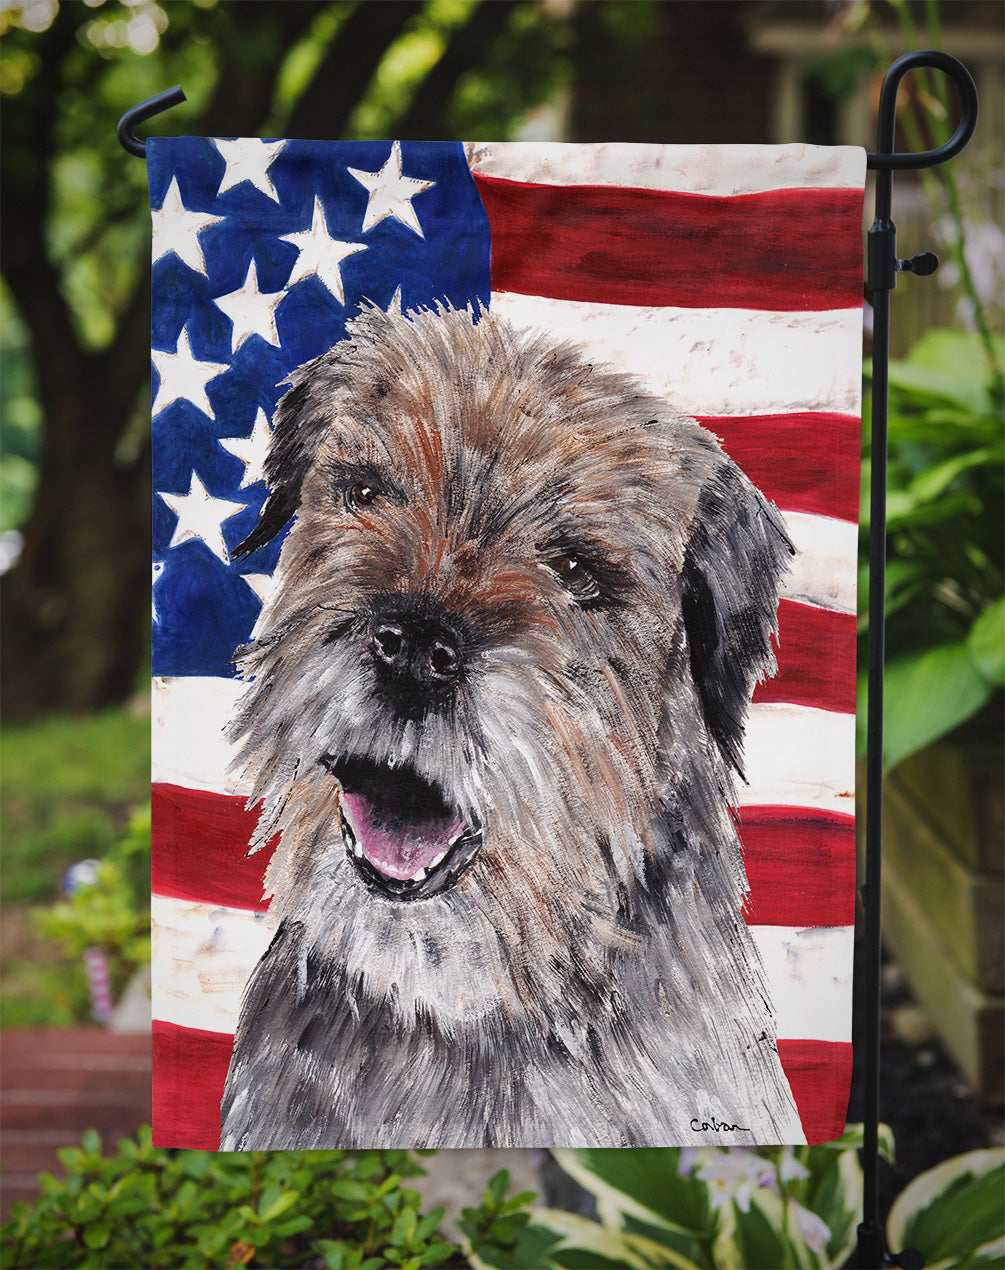 Border Terrier Mix USA American Flag Flag Garden Size